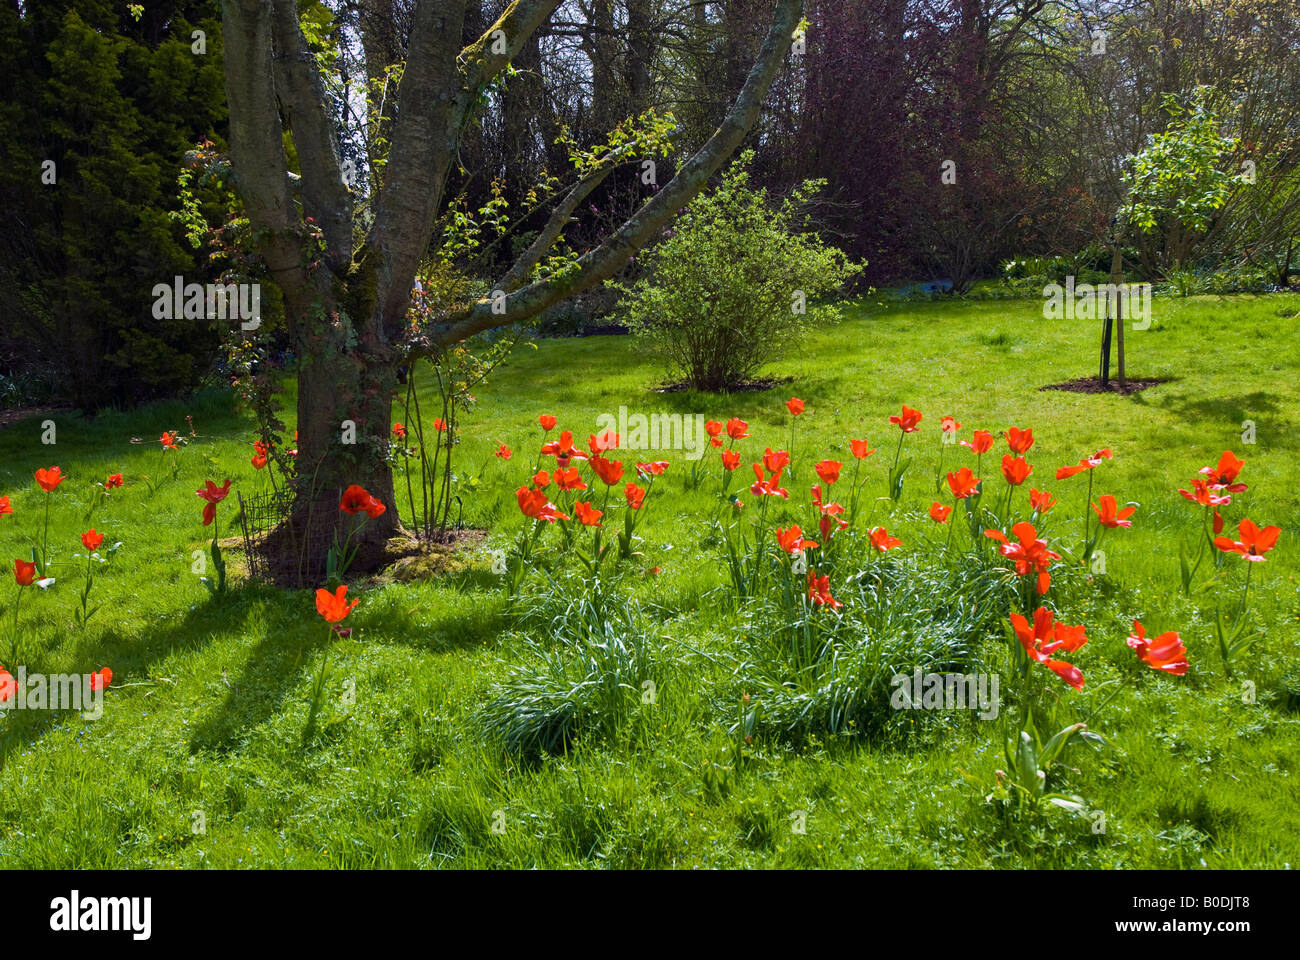 Tulipes rouge vif dans un jardin dans le Berkshire, Angleterre Banque D'Images